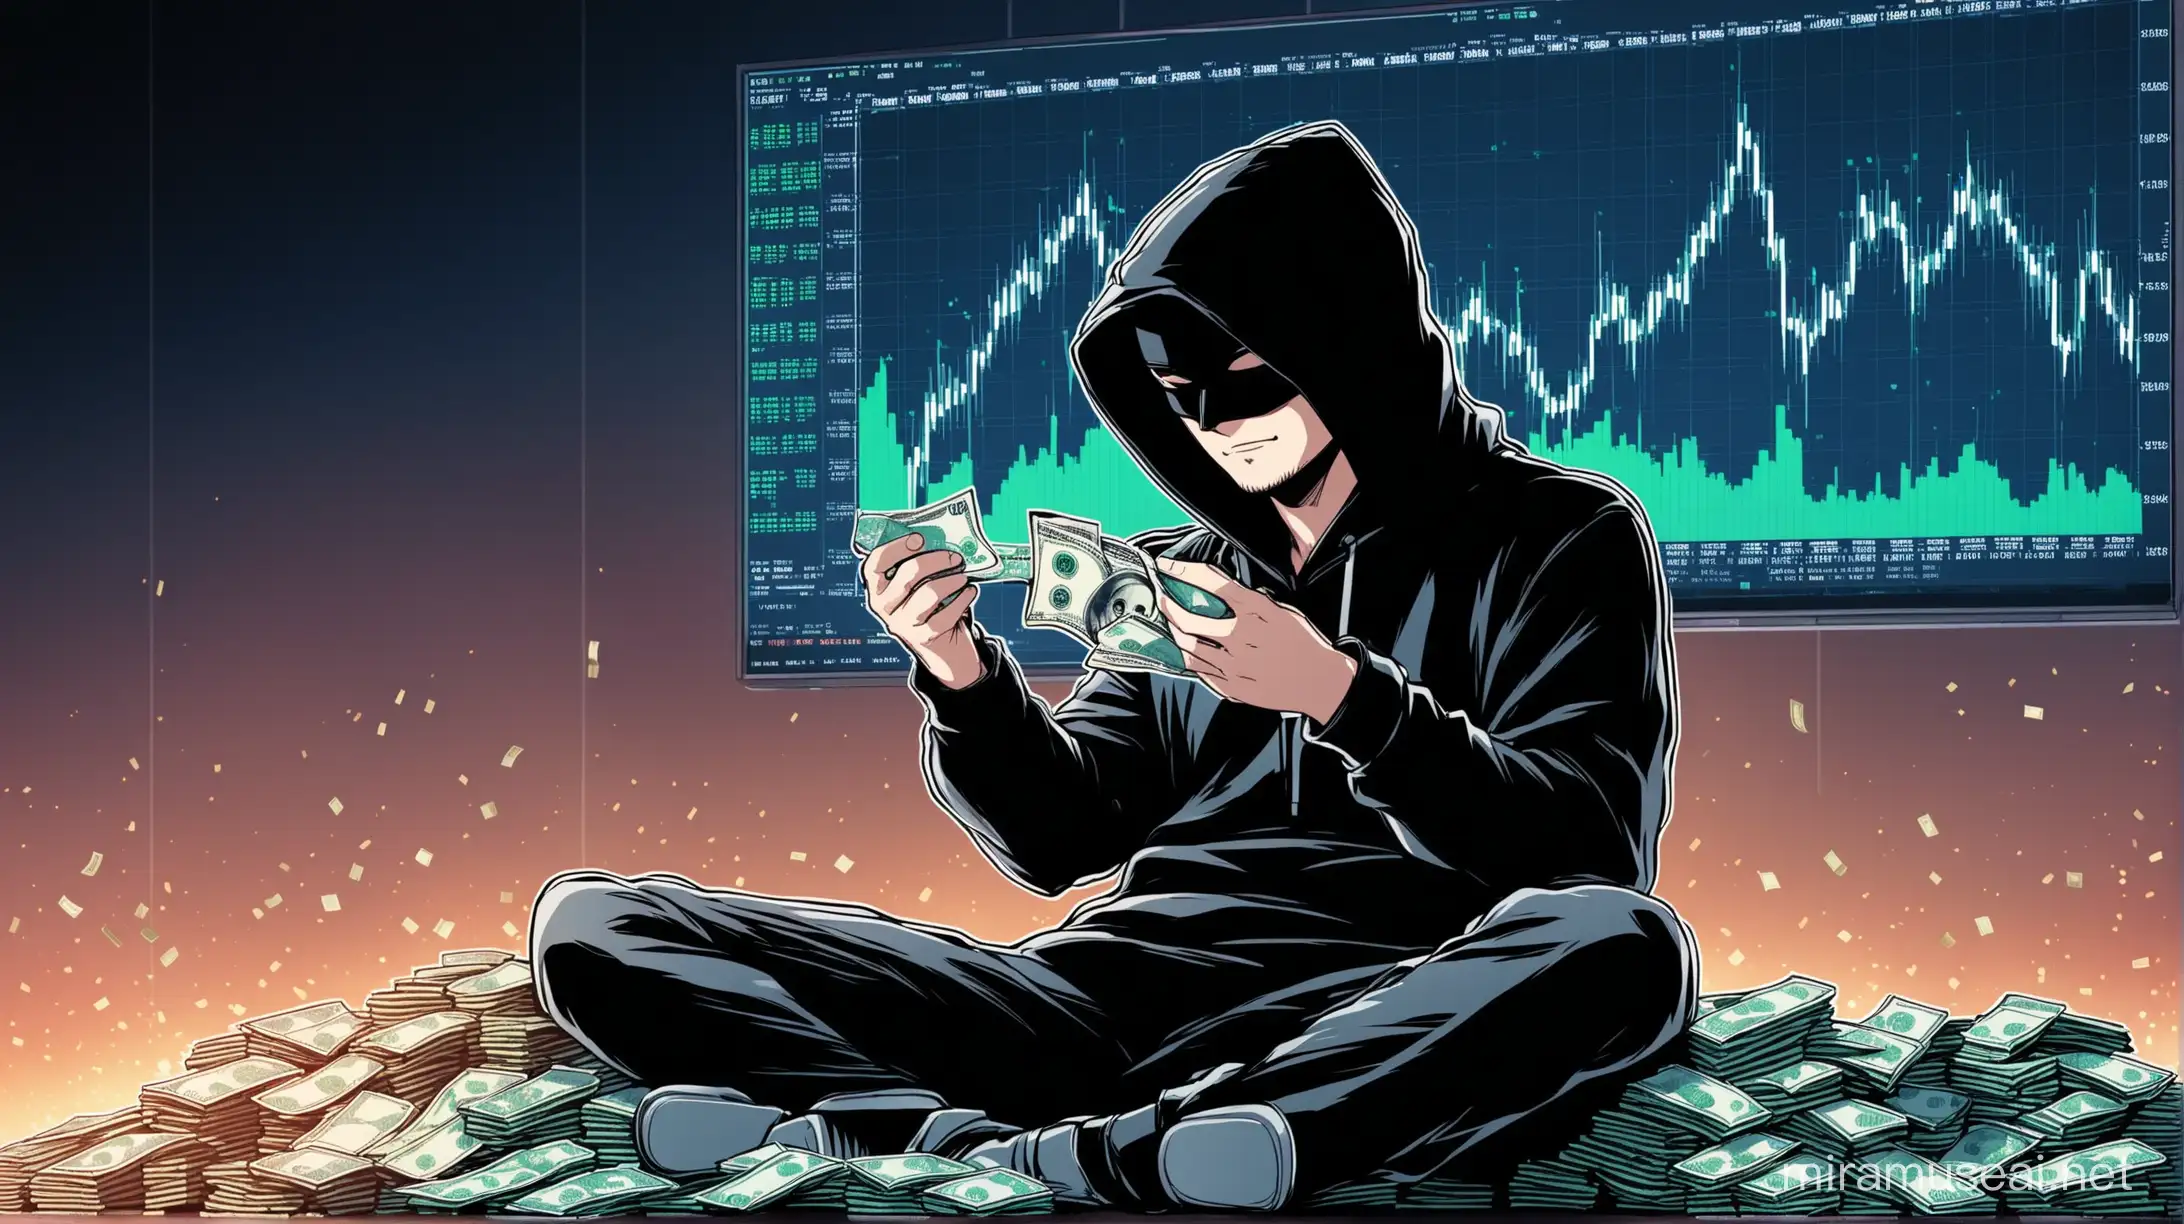 Hacker Sitting with Money Amid Stock Market Upsurge and Plunge